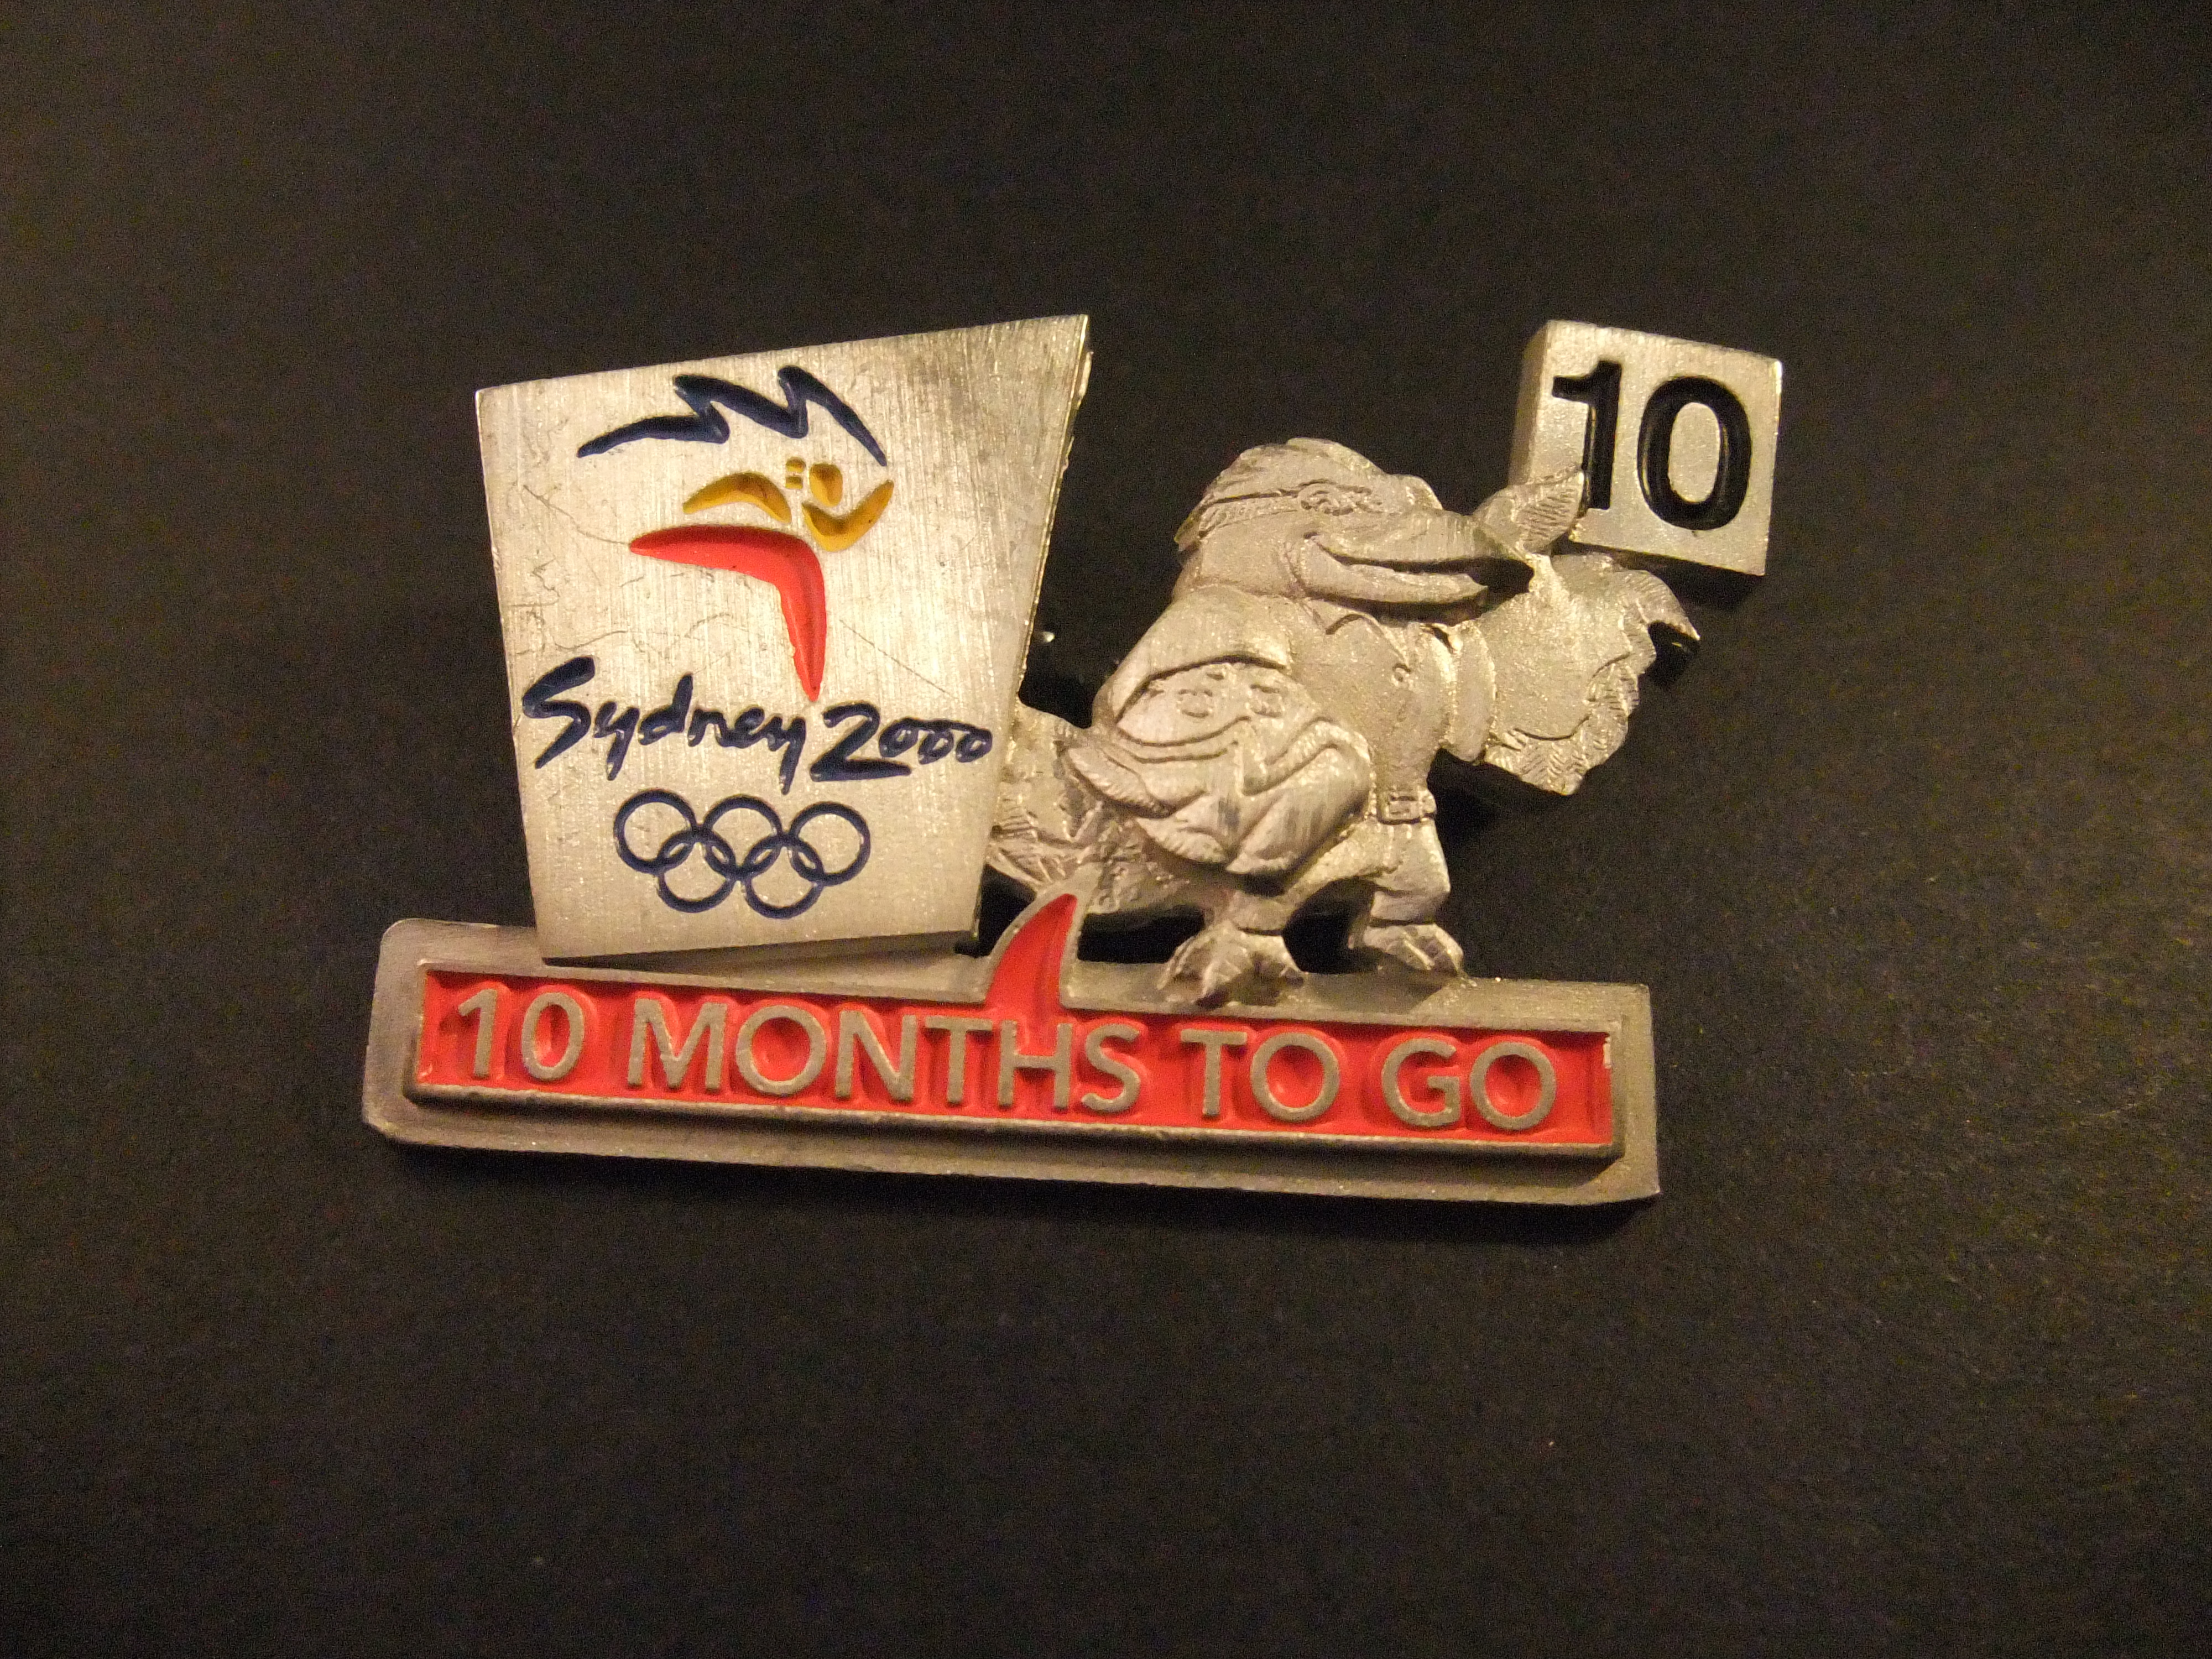 Olympische Zomerspelen 2000 in Sydney, Australië ( nog 10 dagen voor de opening)